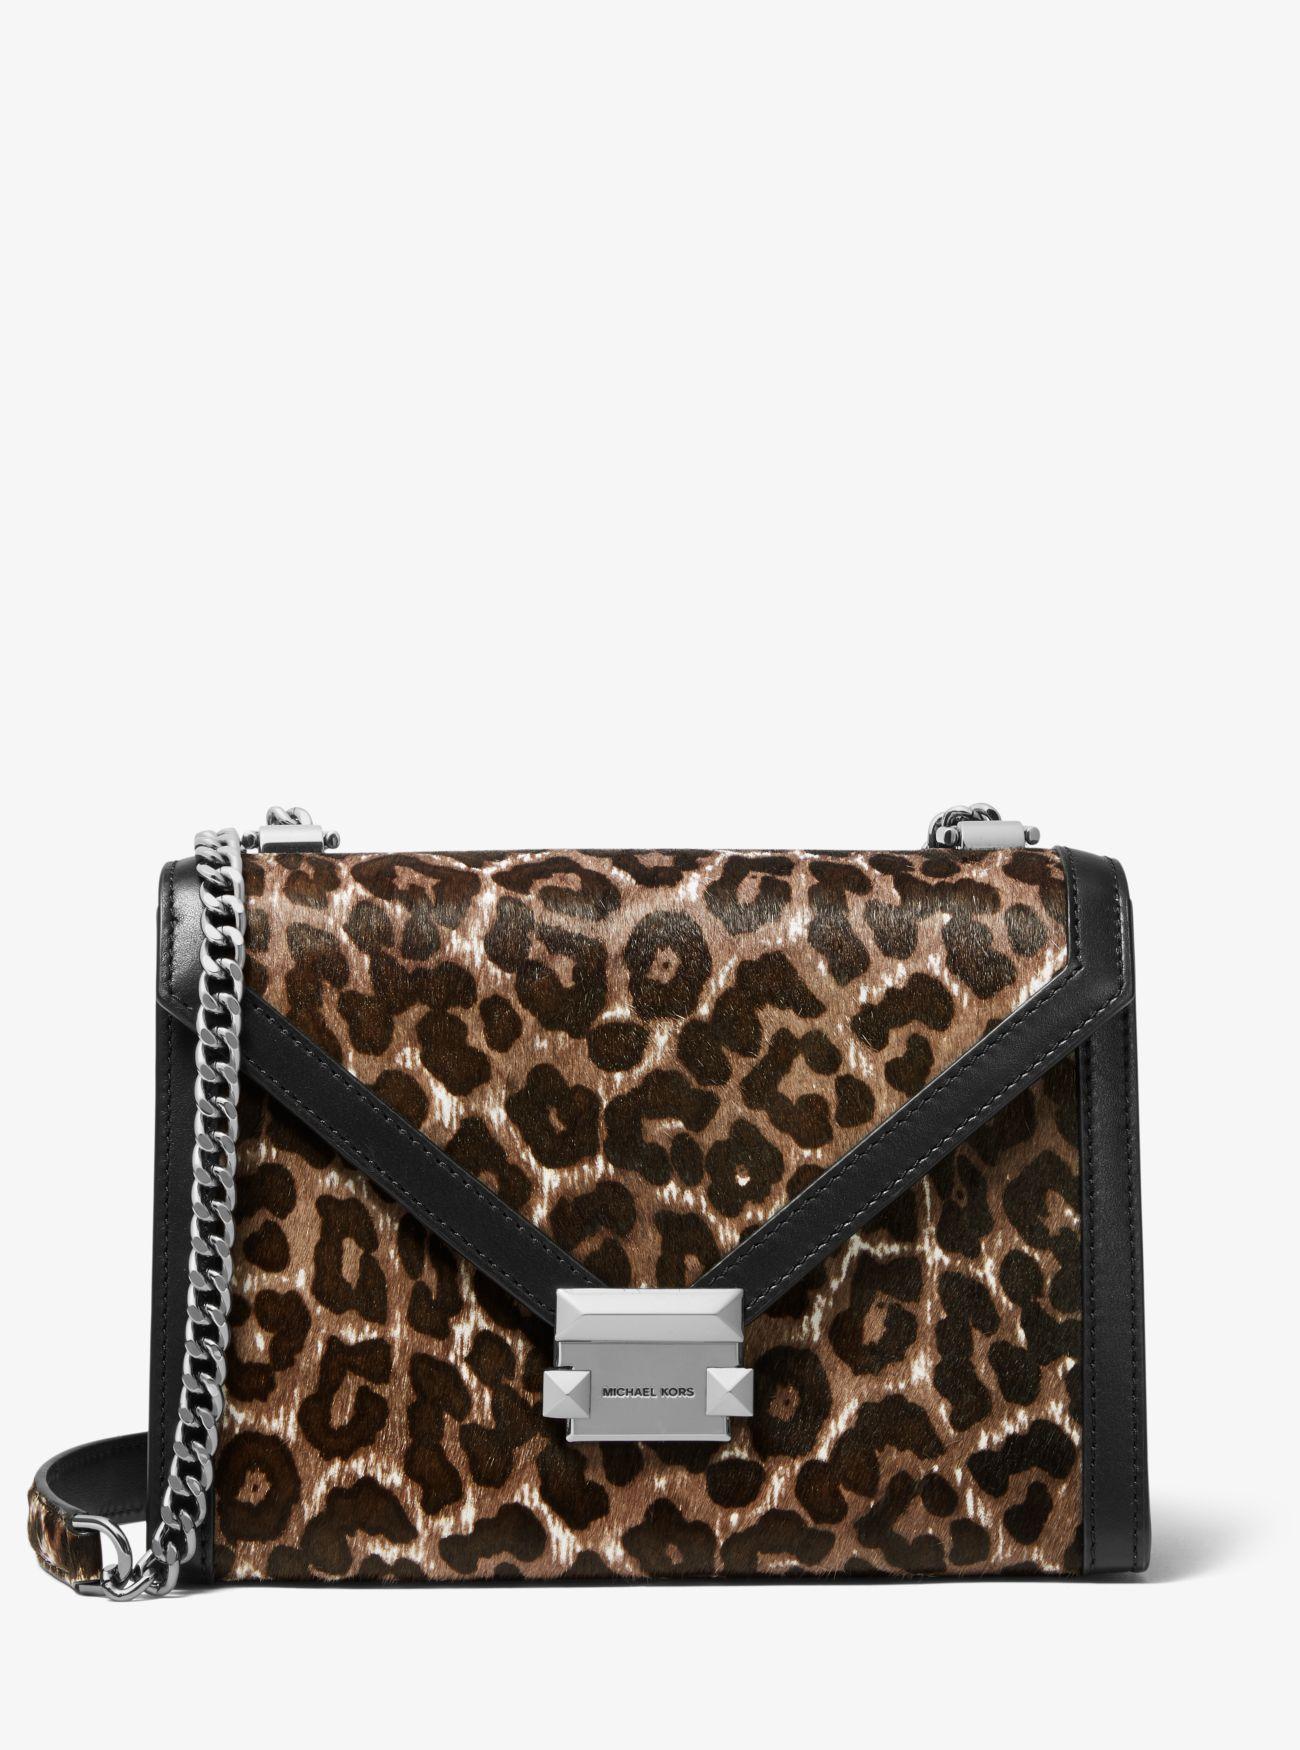 Michael Kors Leopard Handbag | IQS Executive